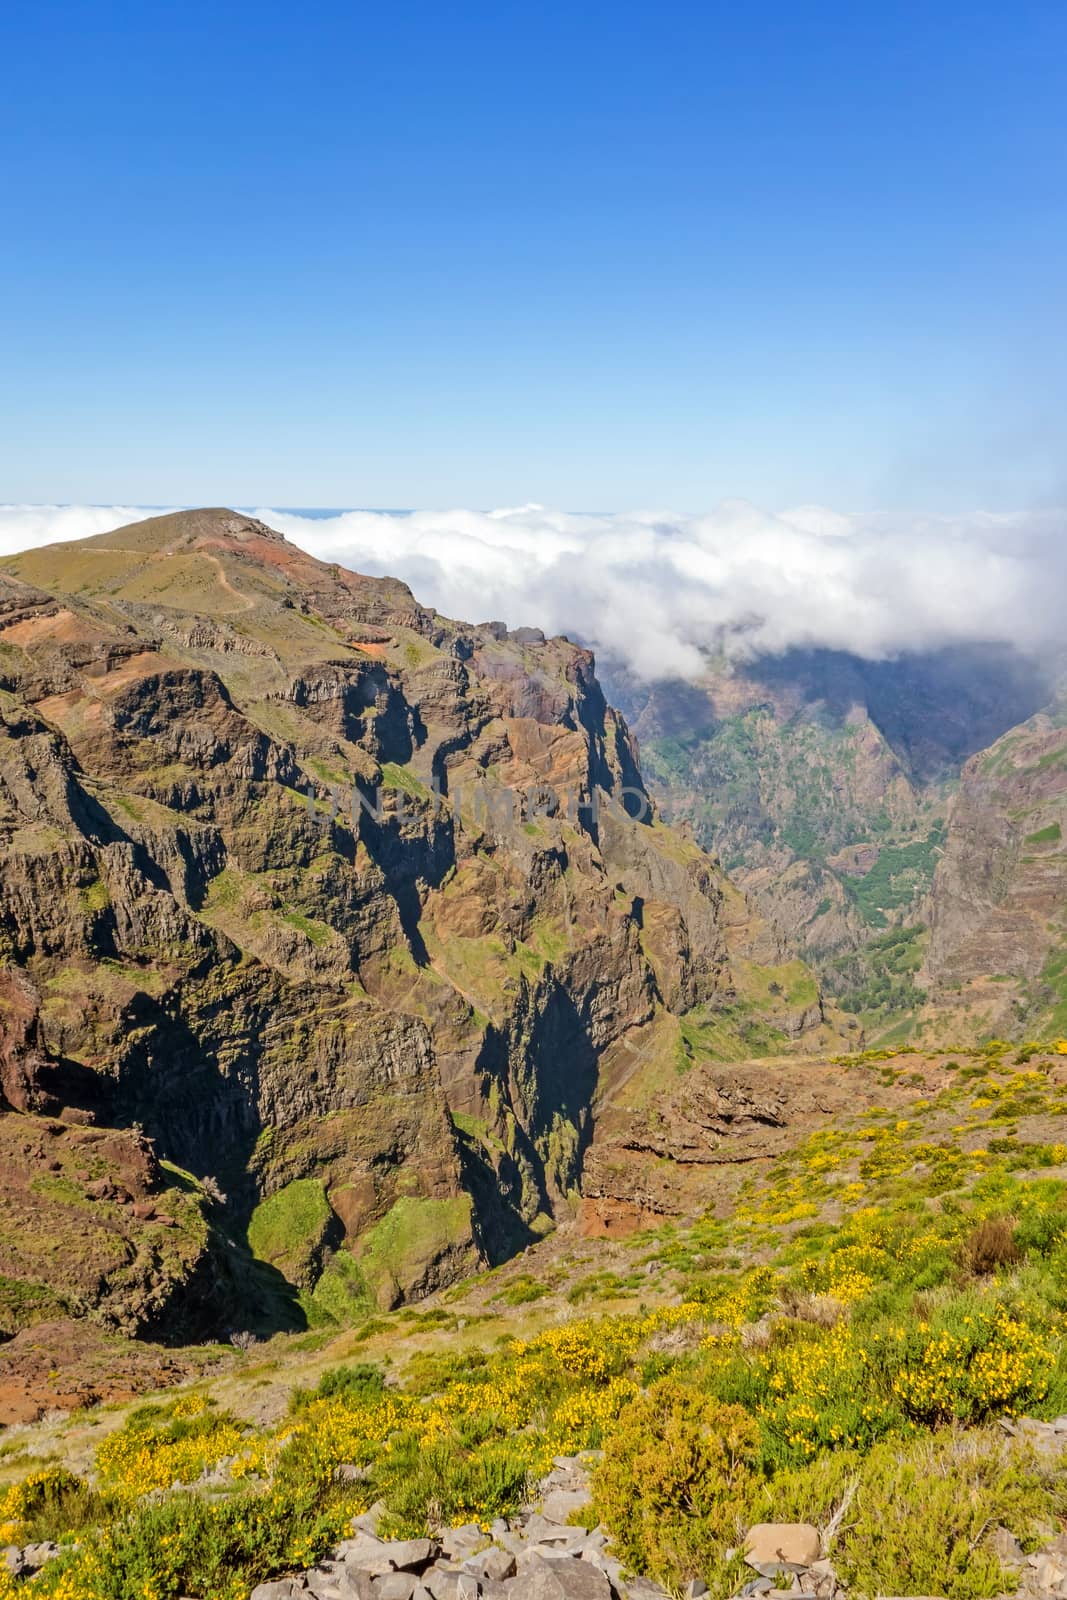 Volcanic mountain landscape - Pico do Arieiro, Madeira, Portugal